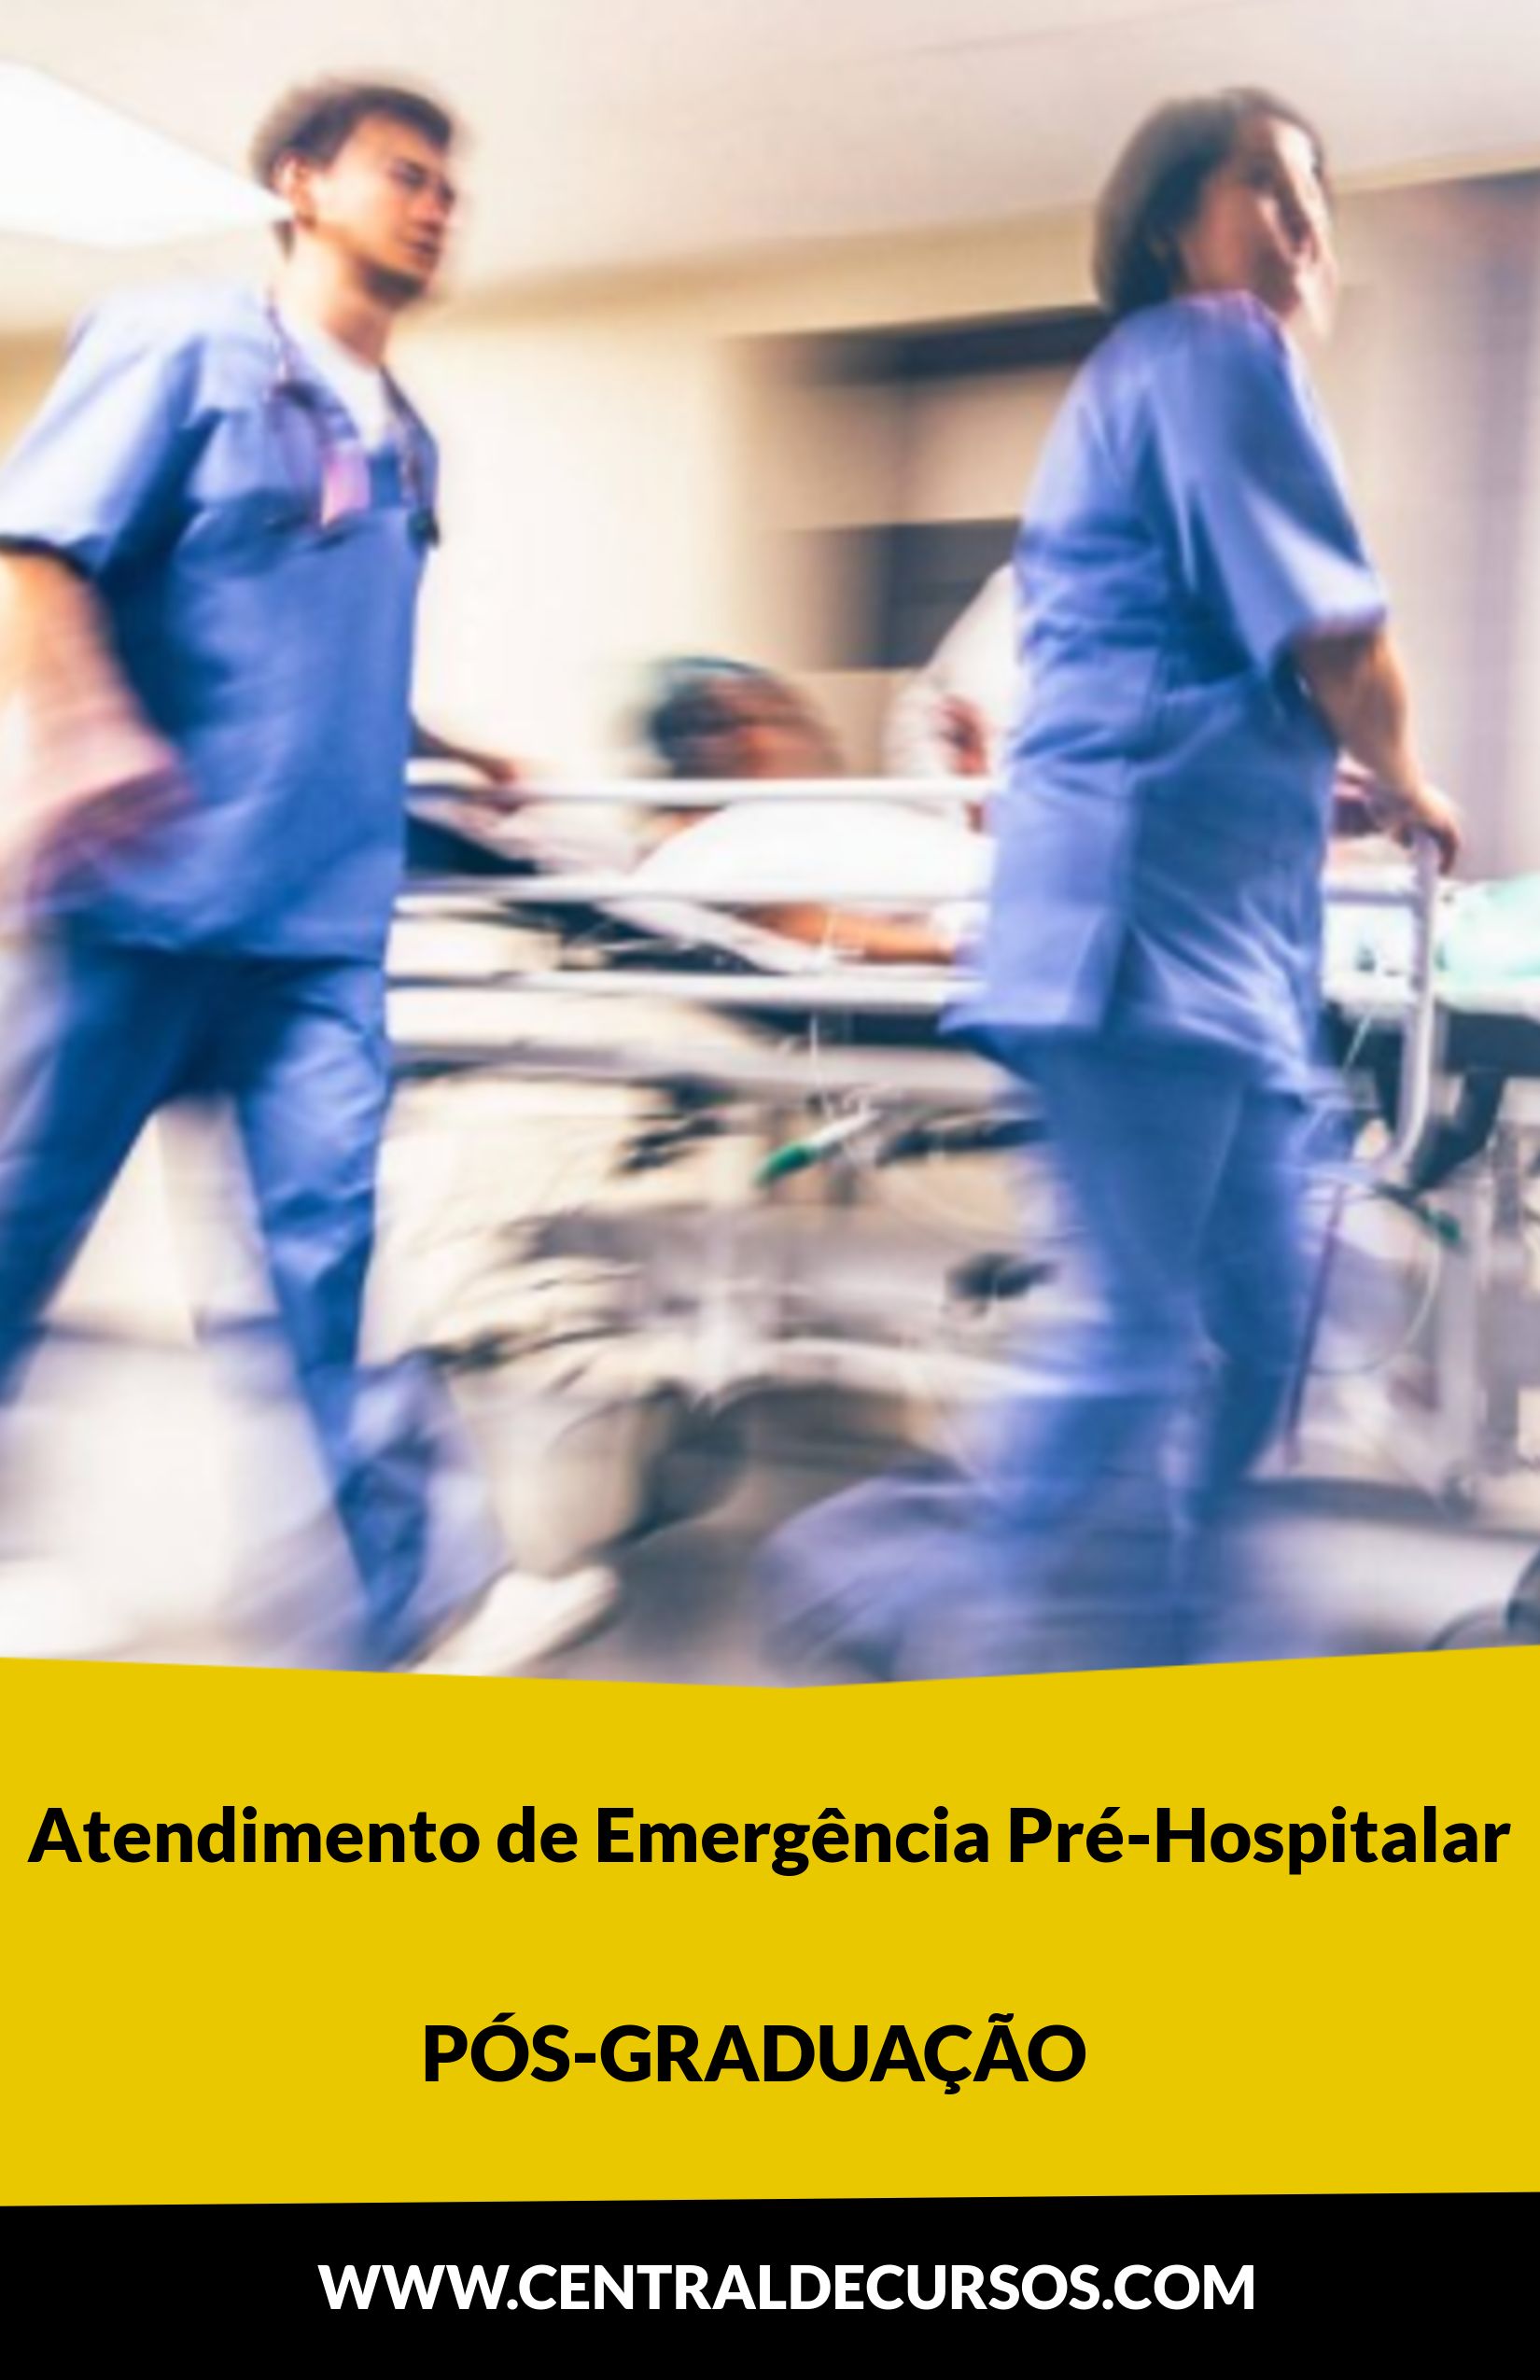 Pós-graduação em atendimento de emergência hospitalar